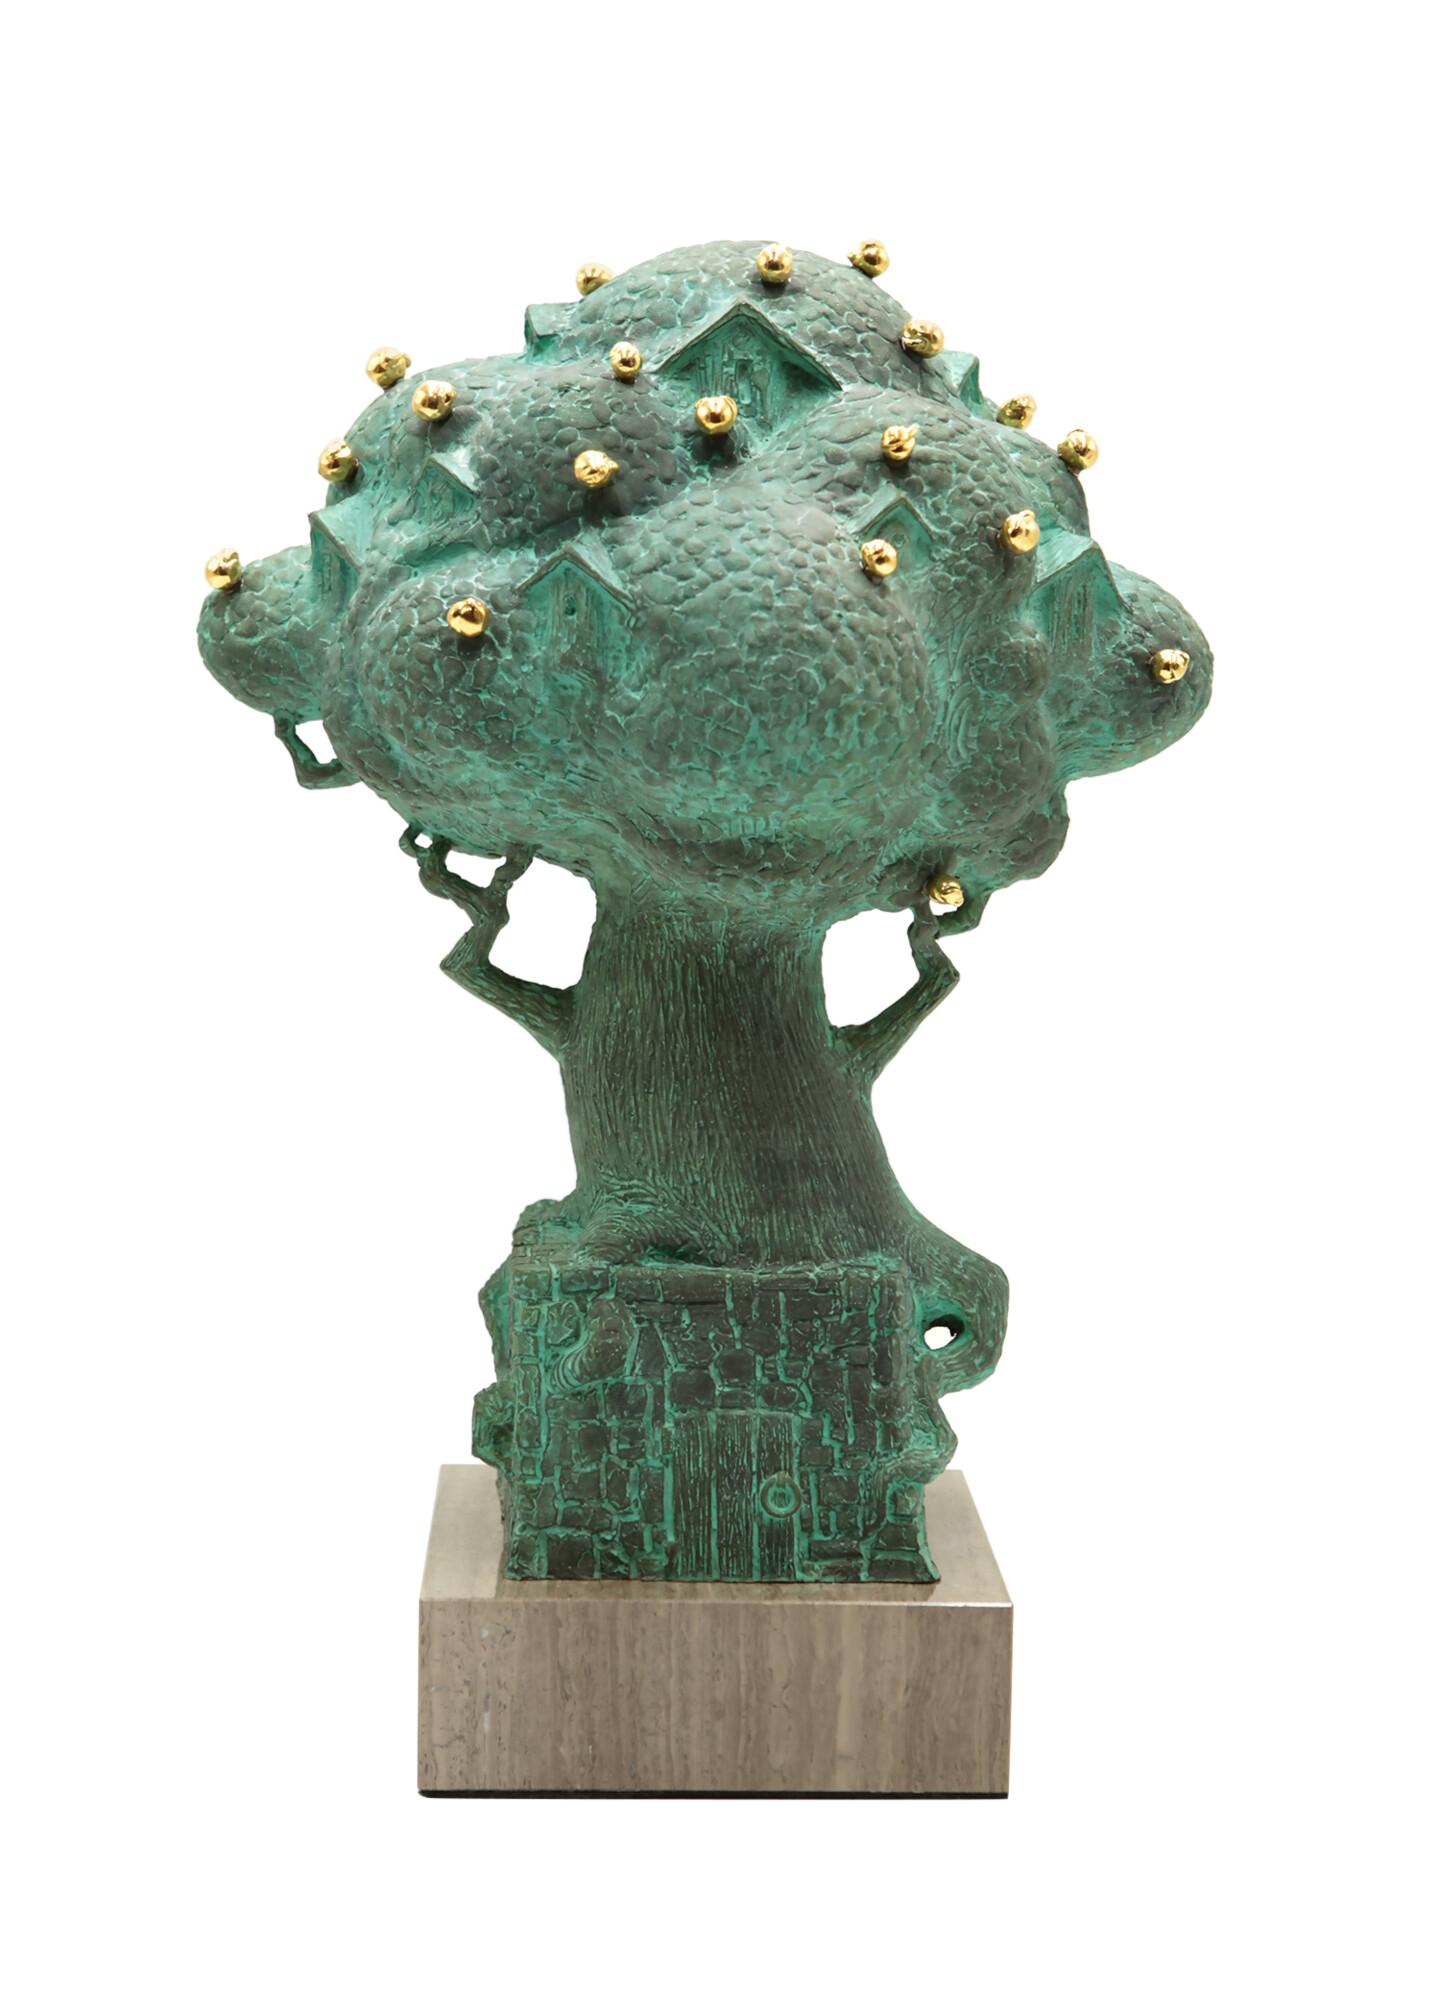 Volodymyr MYKYTENKO Figurative Sculpture - Paradise Tree, Bronze Sculpture by Volodymyr Mykytenko, 2013